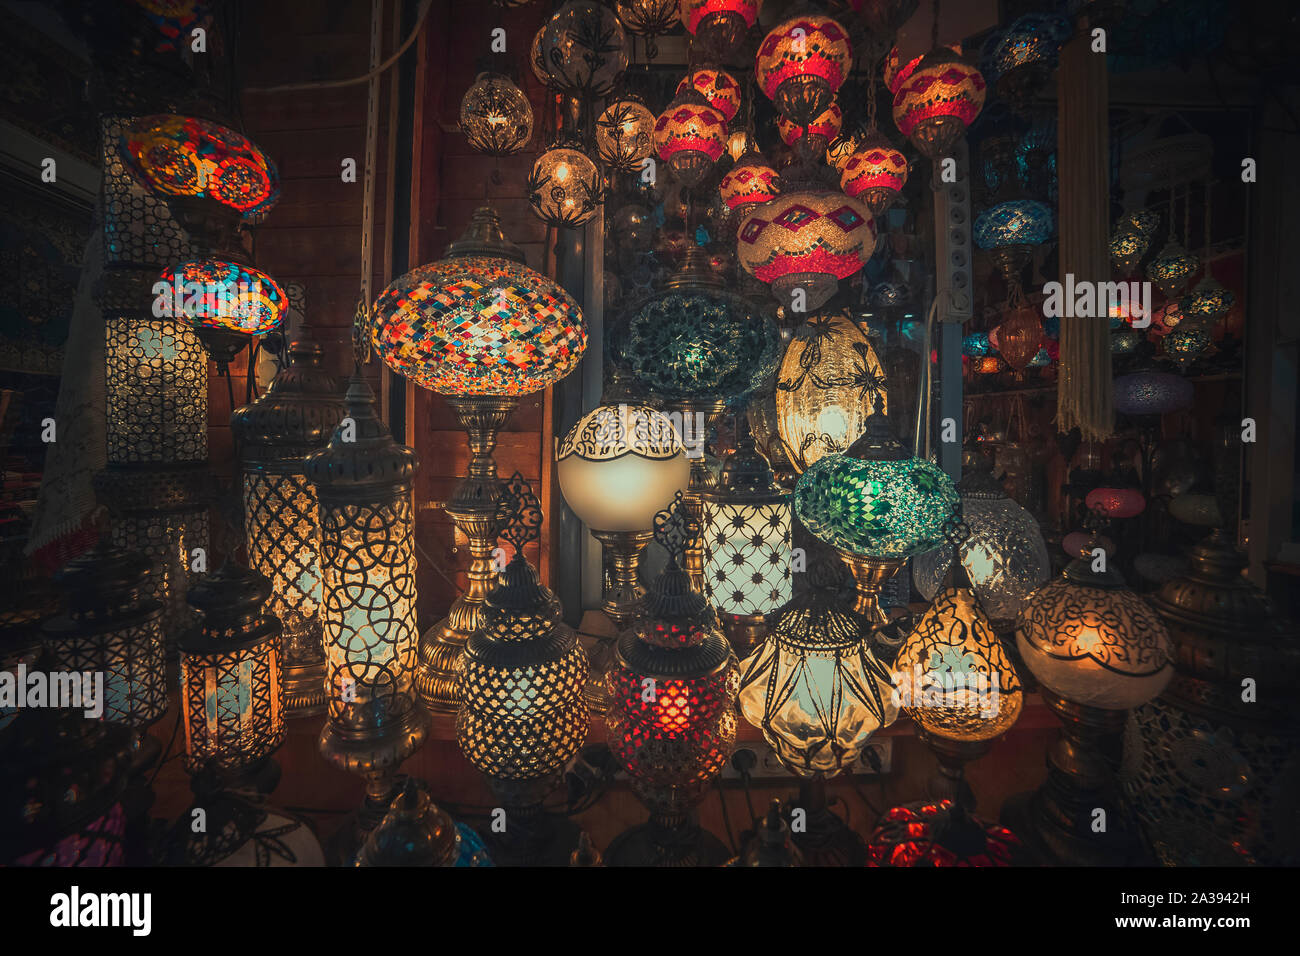 Lanterne mystique vue depuis l'est de la culture avec couleurs tendance Banque D'Images